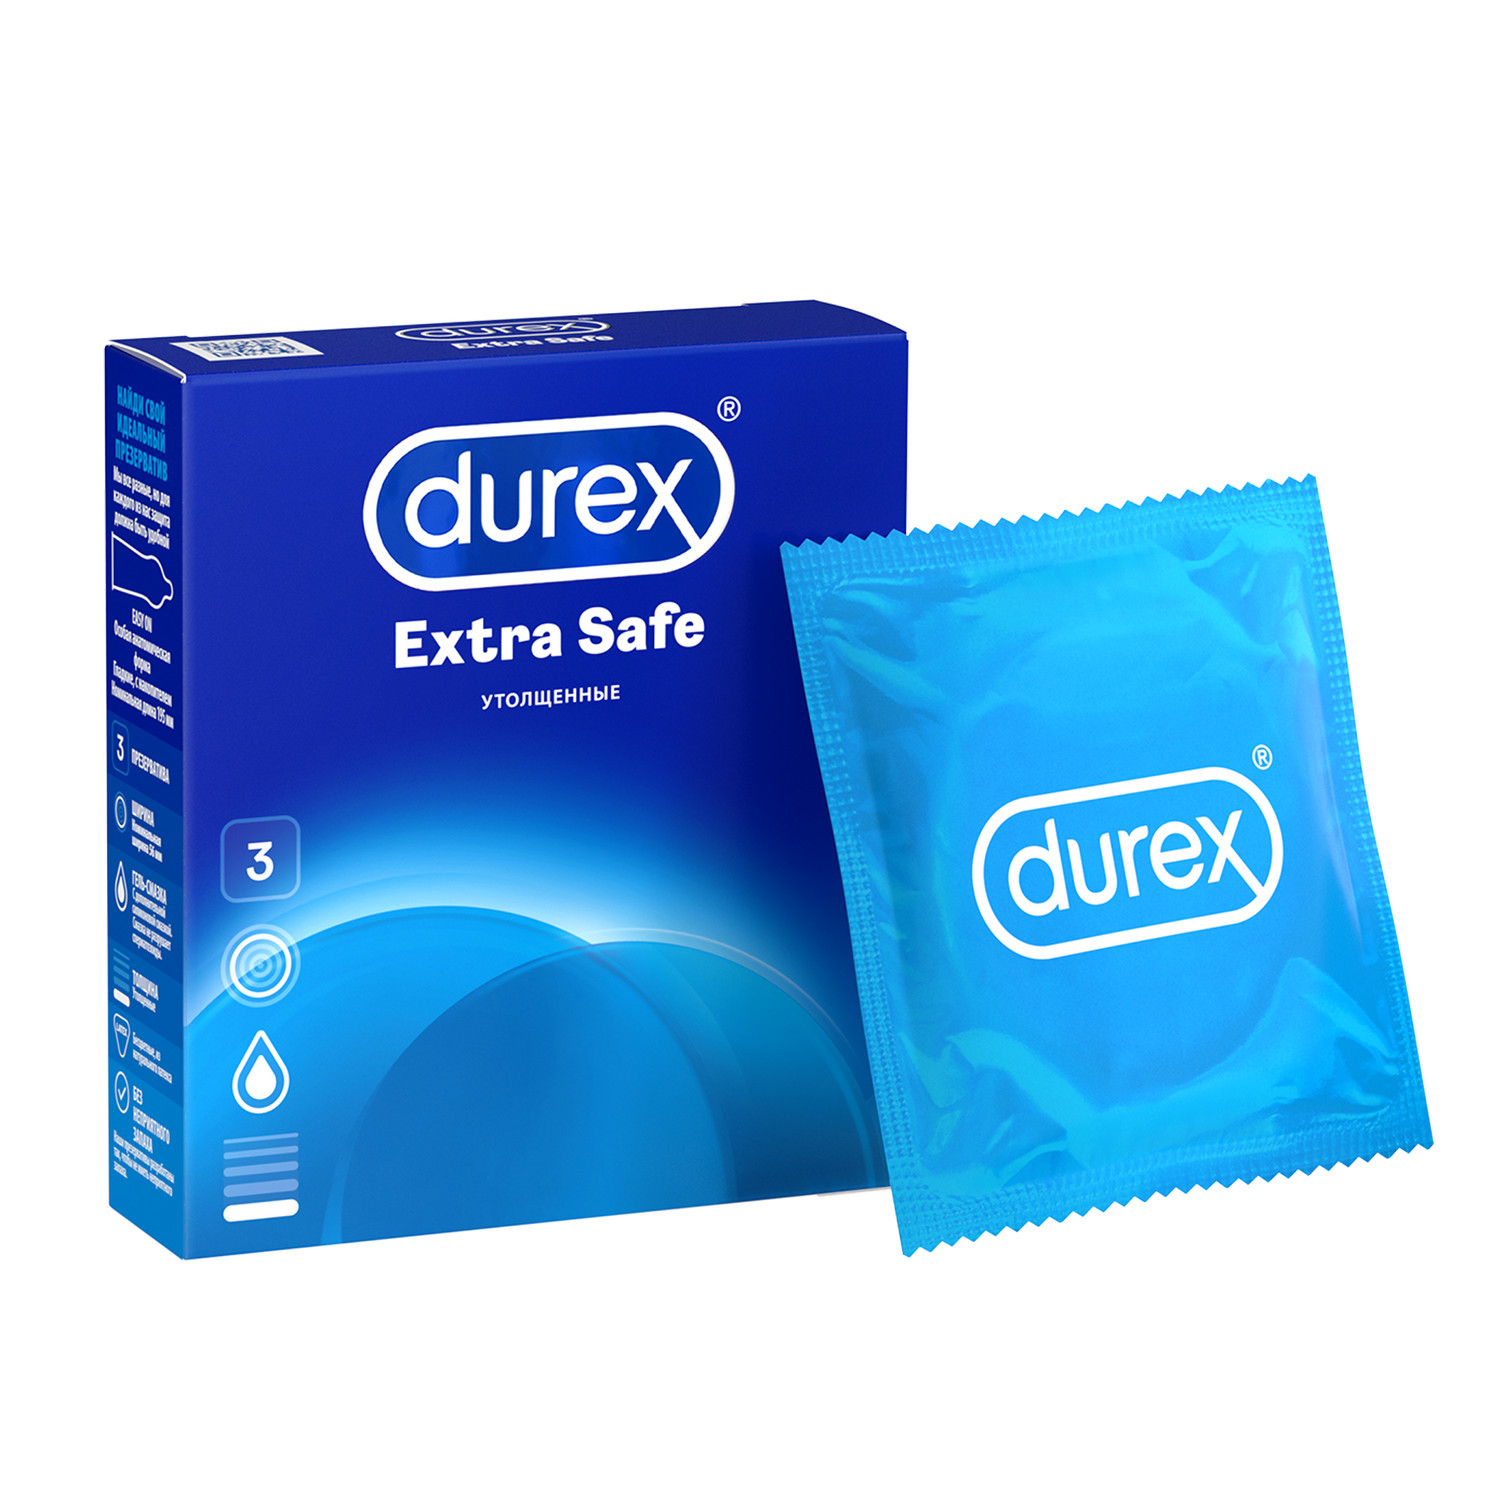 Презервативы Durex Extra Safe утолщенные, 3 шт. философия кому она нужна